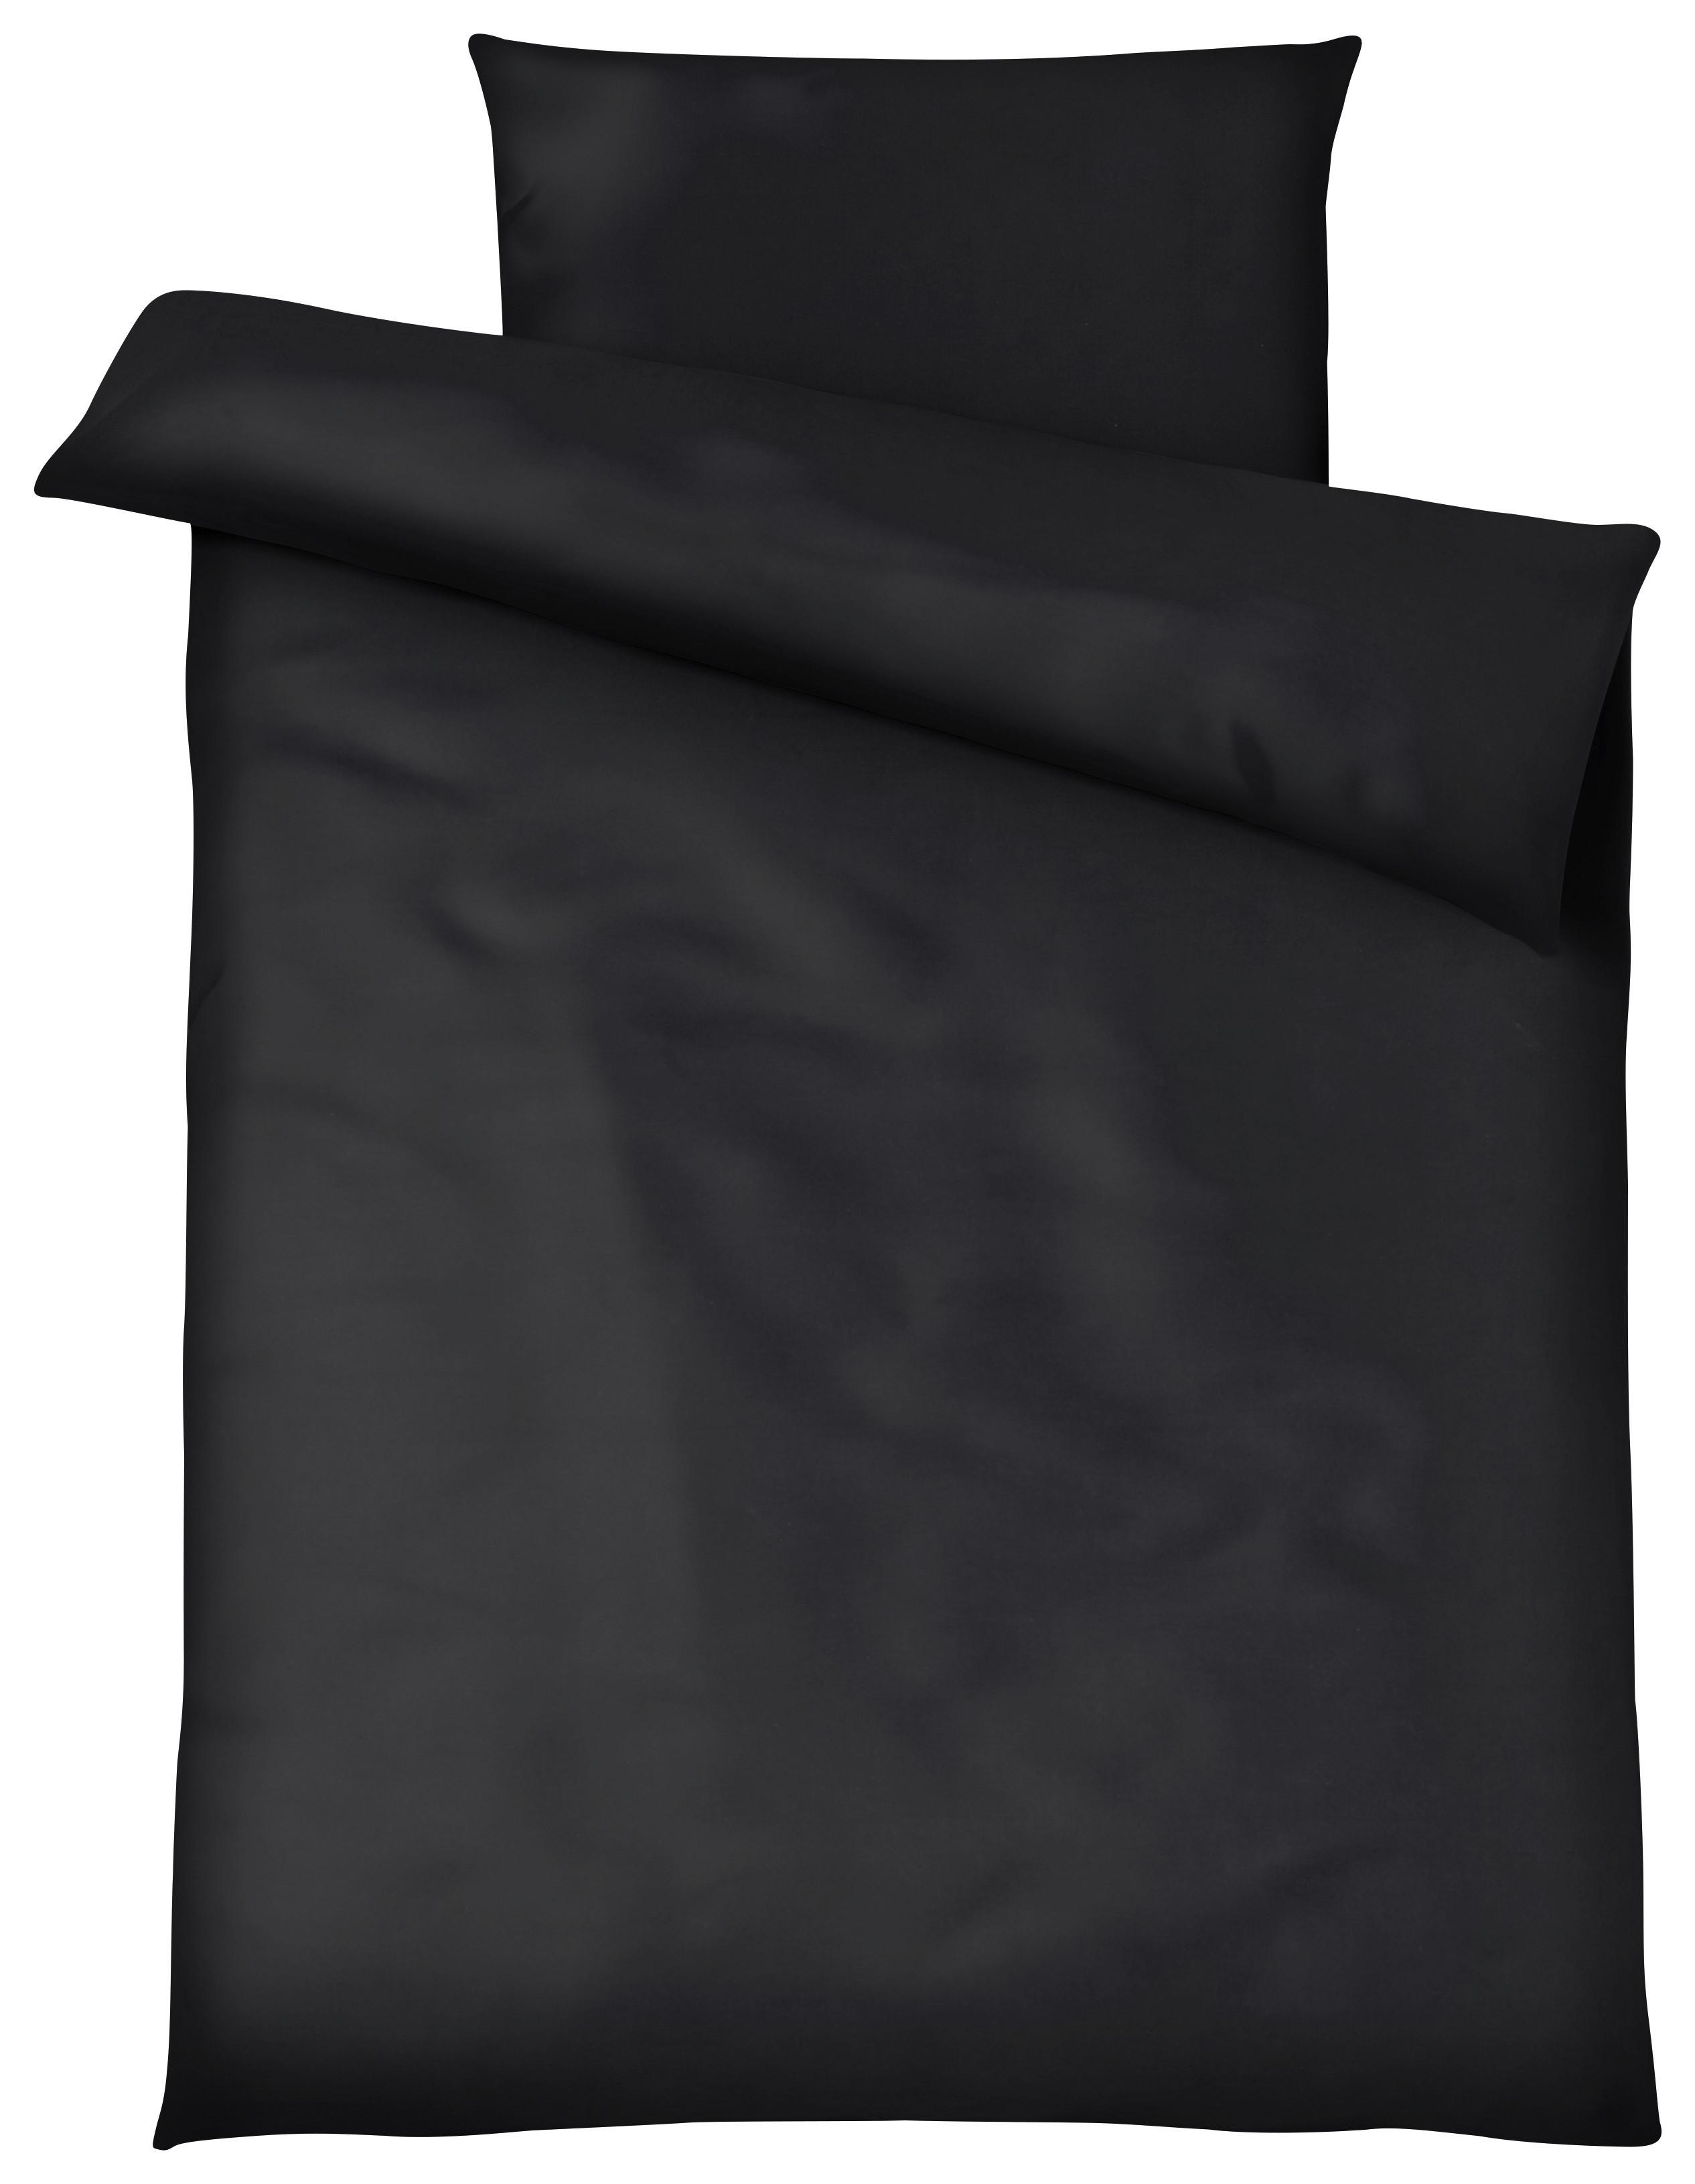 Povlečení Blacky, 140/200cm, Černá - černá, Moderní, textil (140/200cm) - Modern Living